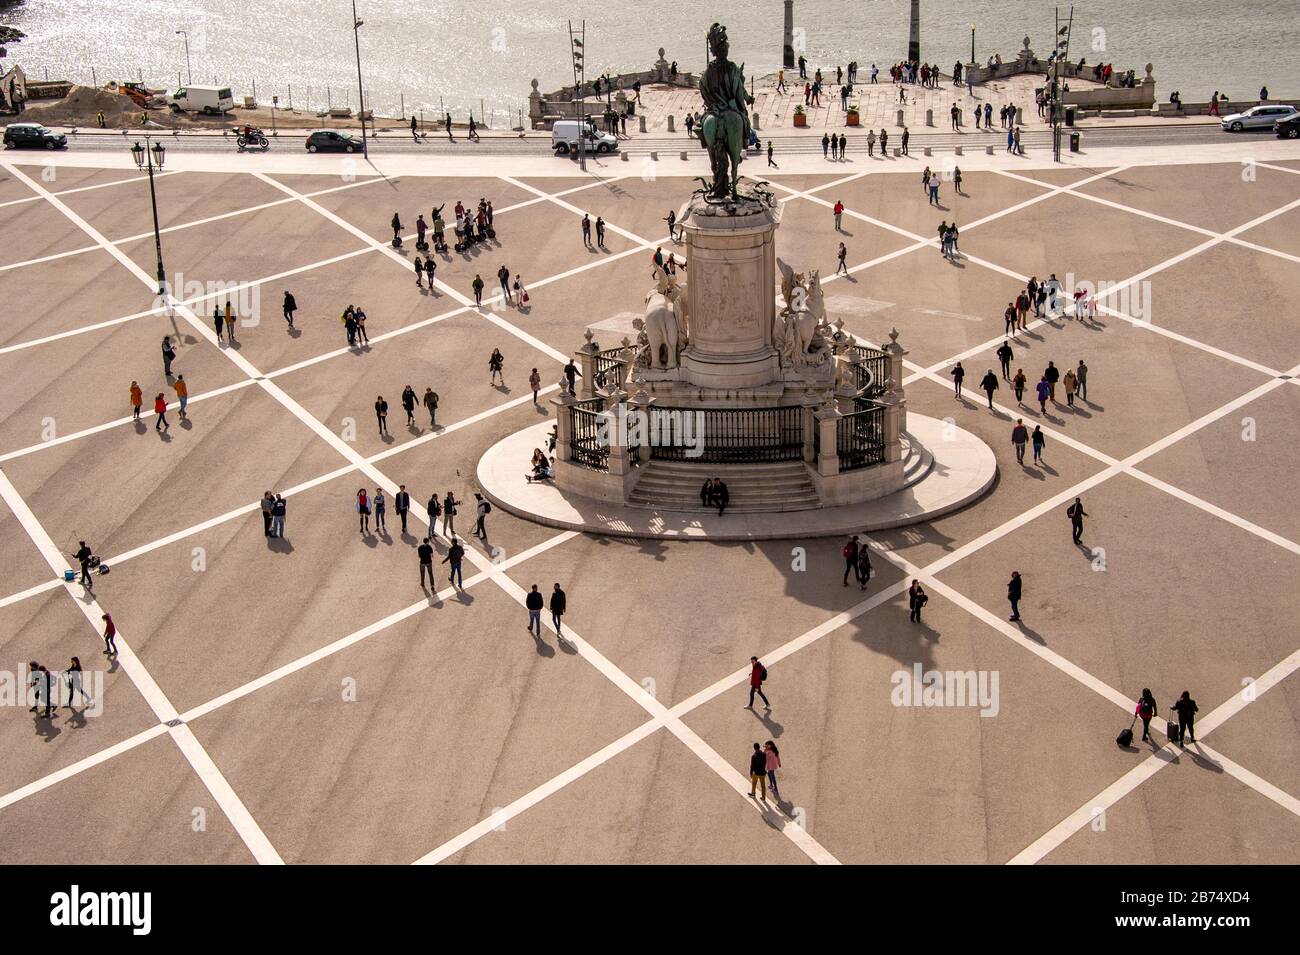 Lisbonne, Portugal - 2 mars 2020: Les gens à la Praca do Comercio comme vu d'en haut Banque D'Images